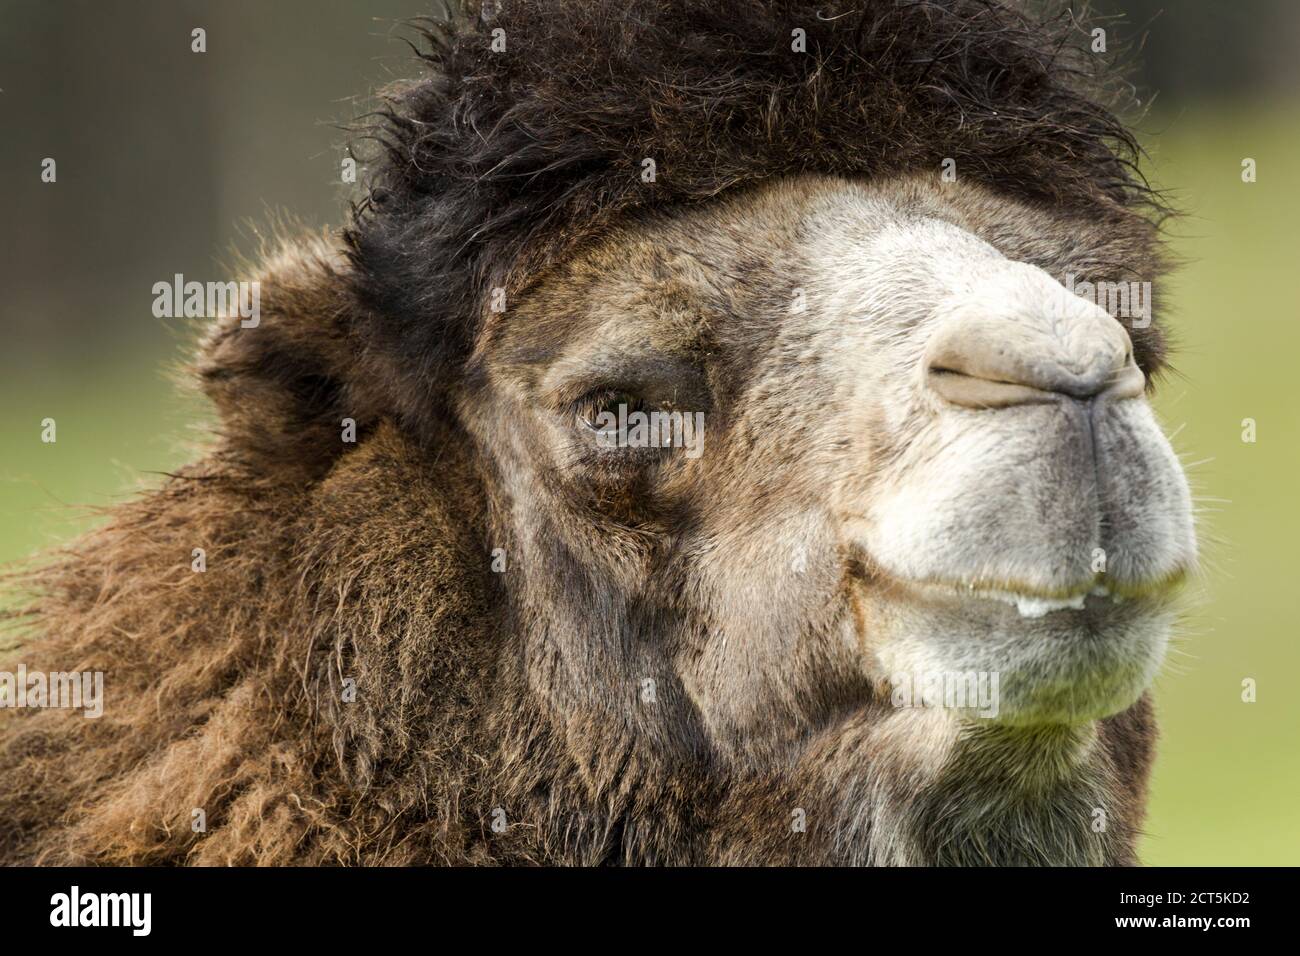 Cammello Bactriano (Camelus bactrianus) vista ravvicinata della testa e del viso. Campione prigioniero. Foto Stock